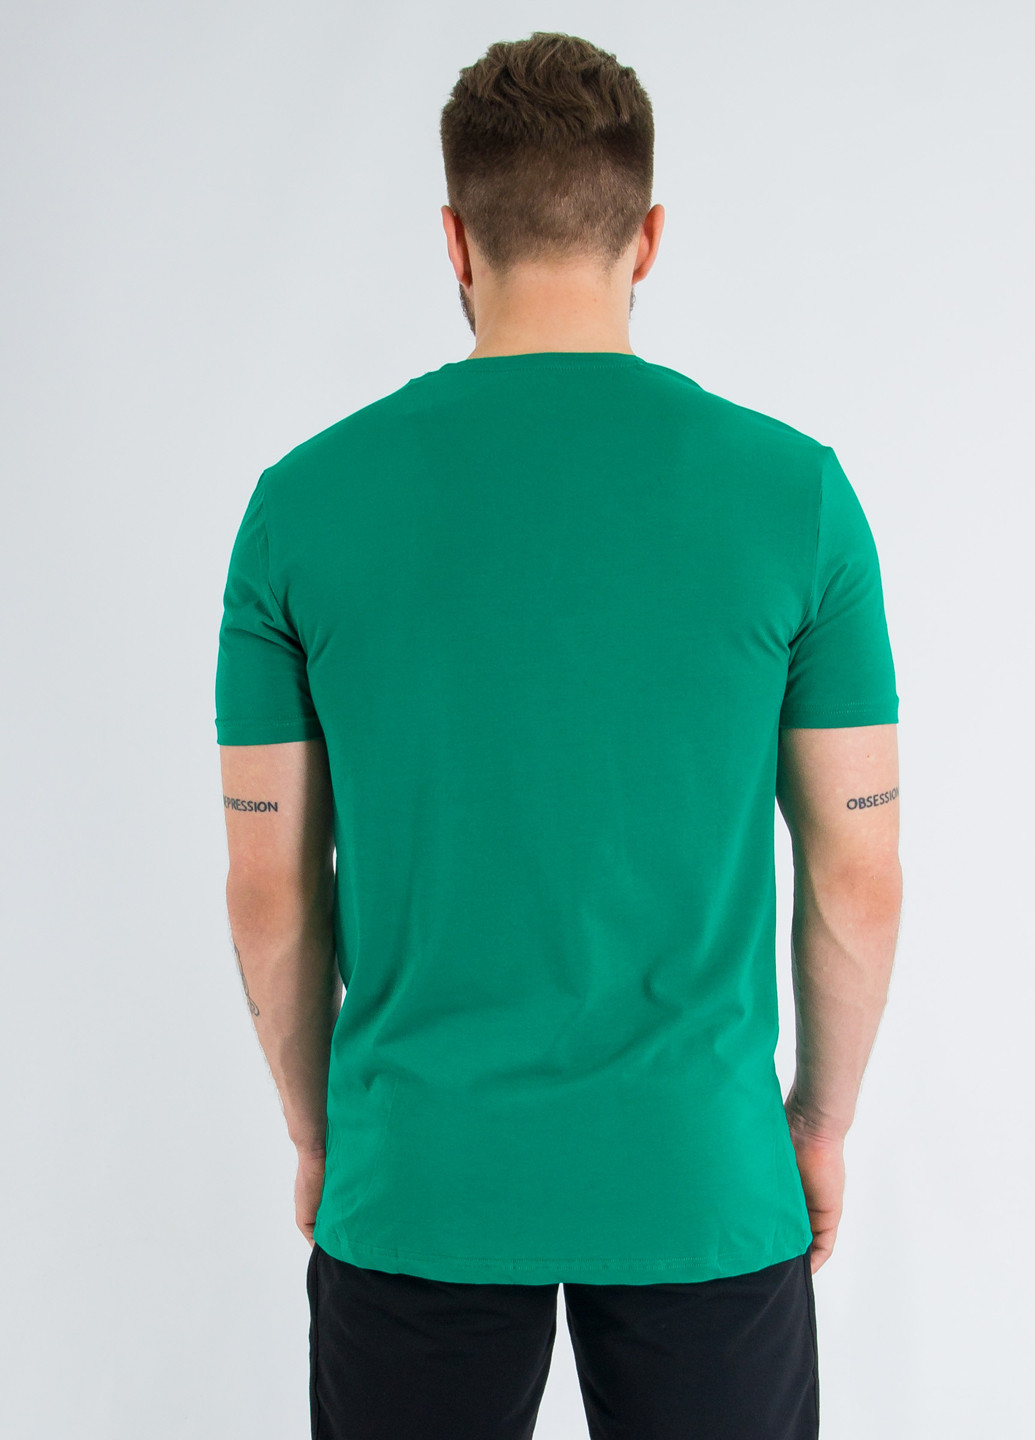 Зеленая футболка New Brand